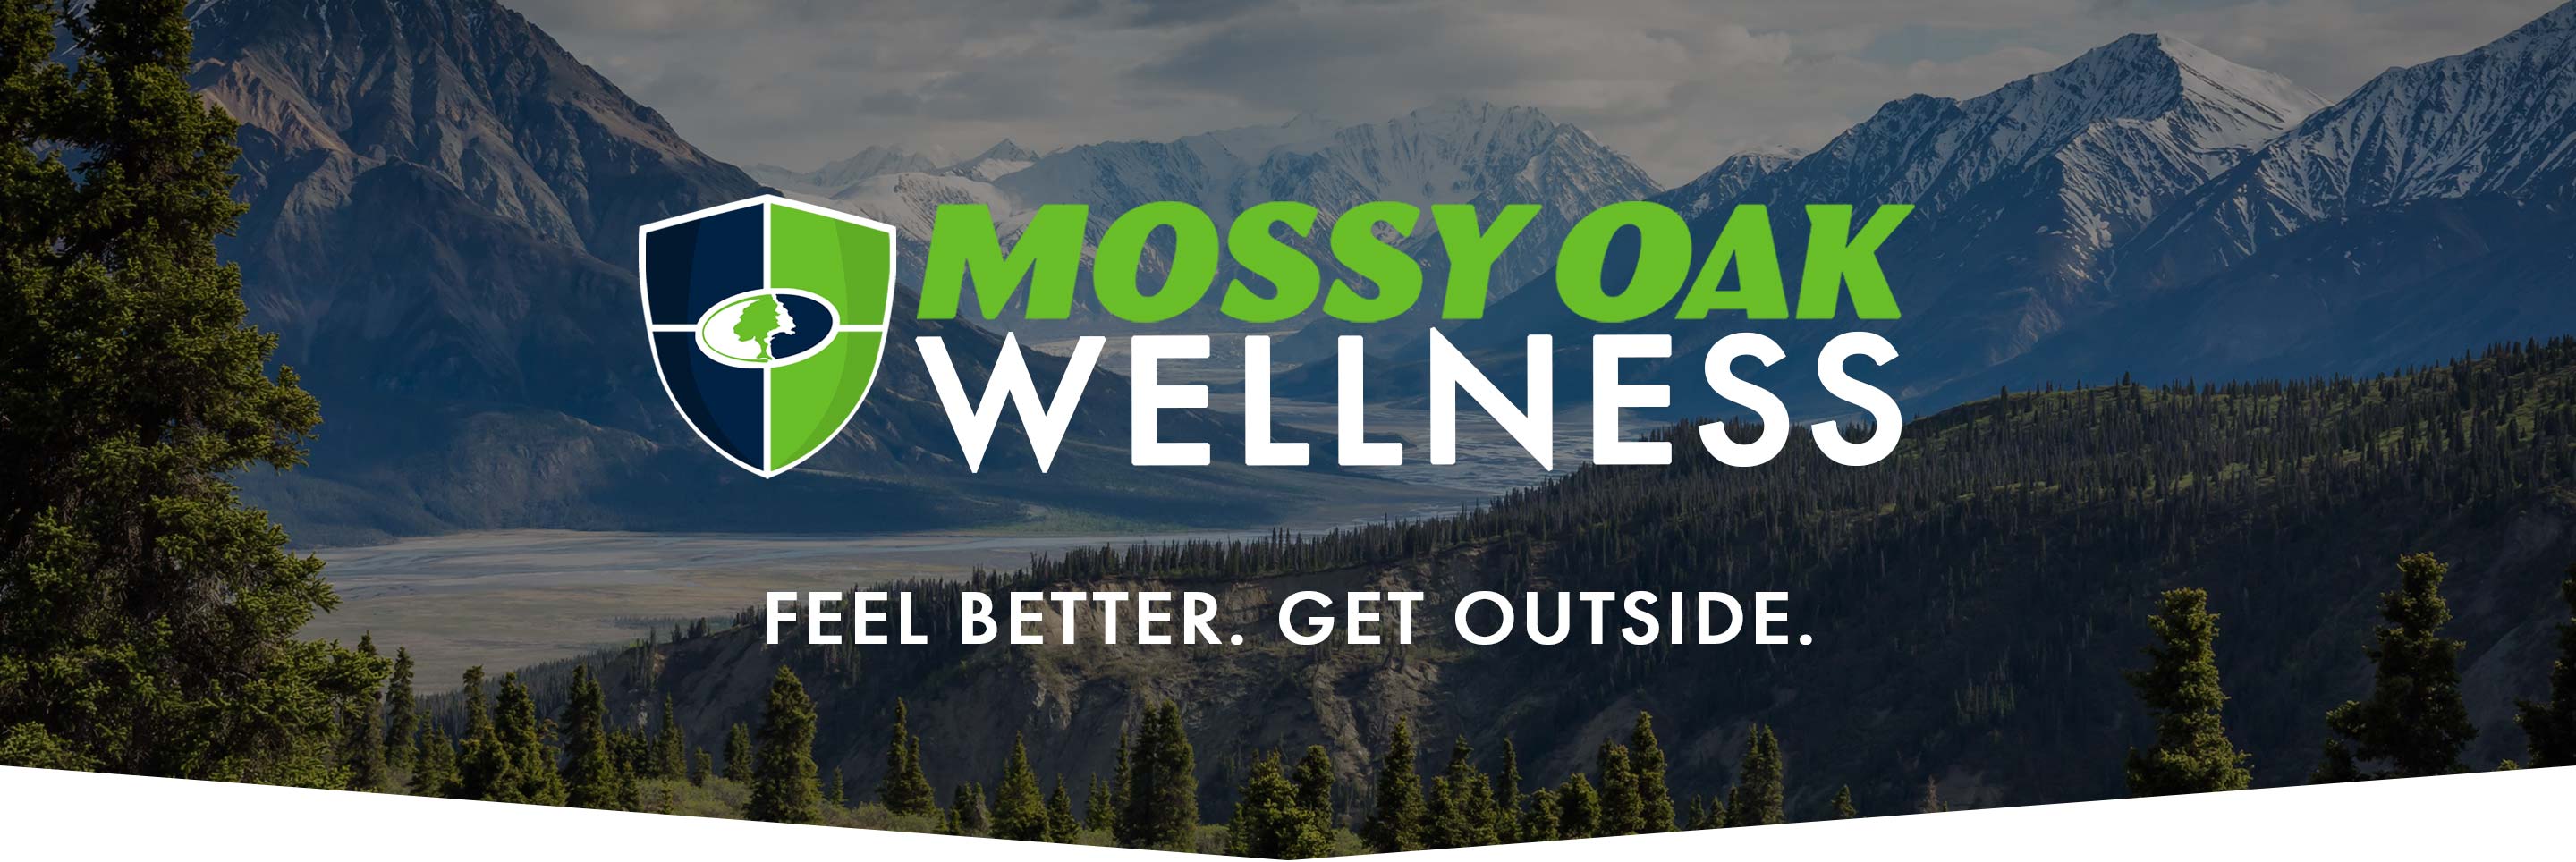 Mossy Oak Wellness. Feel Better. Get Outside.